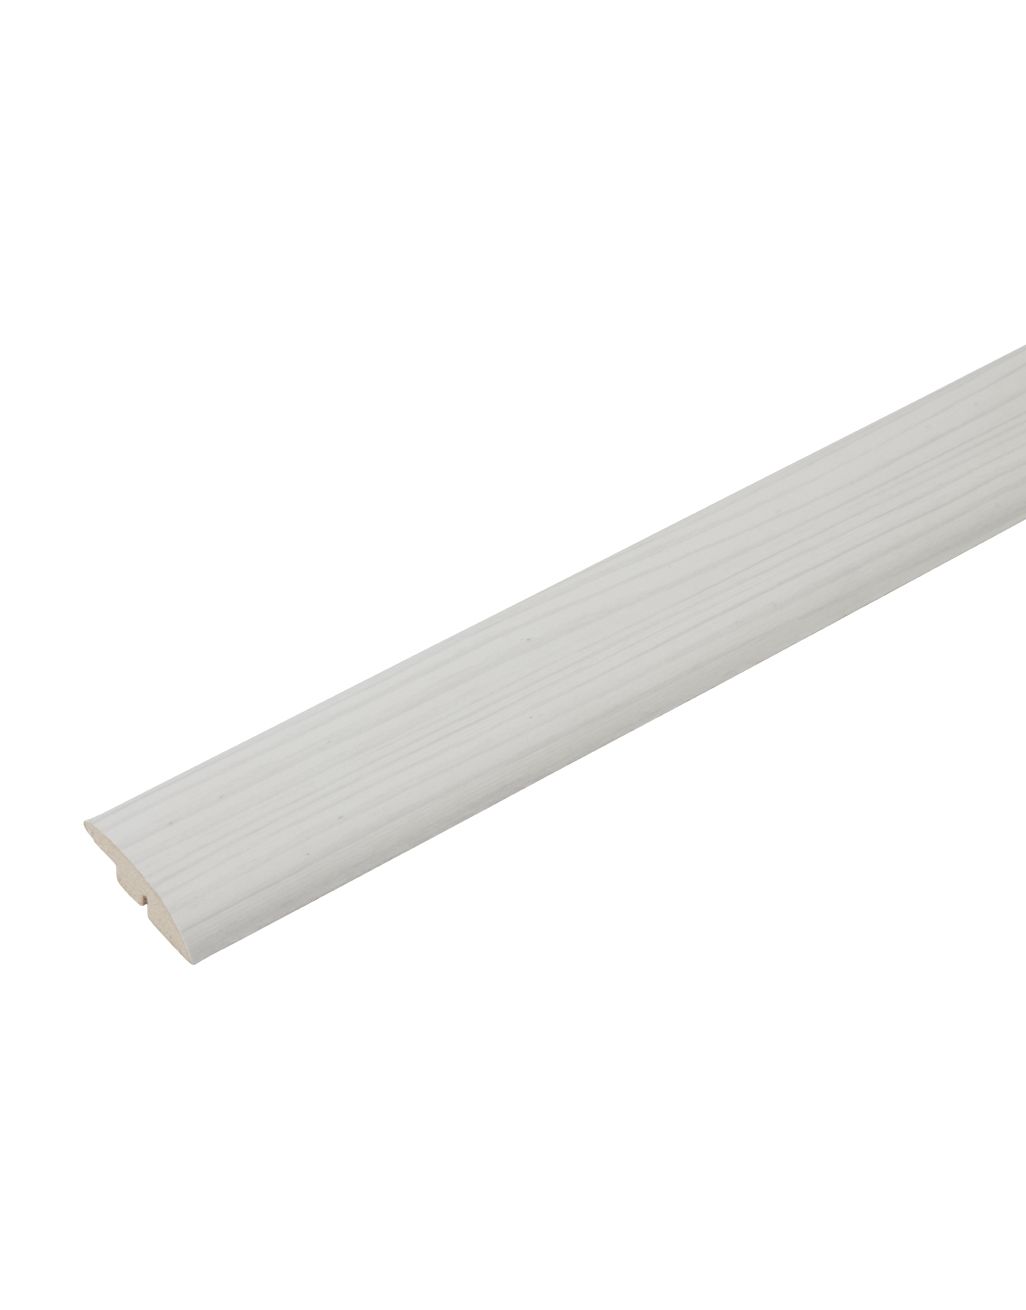 White Wood Ramp Profile 1